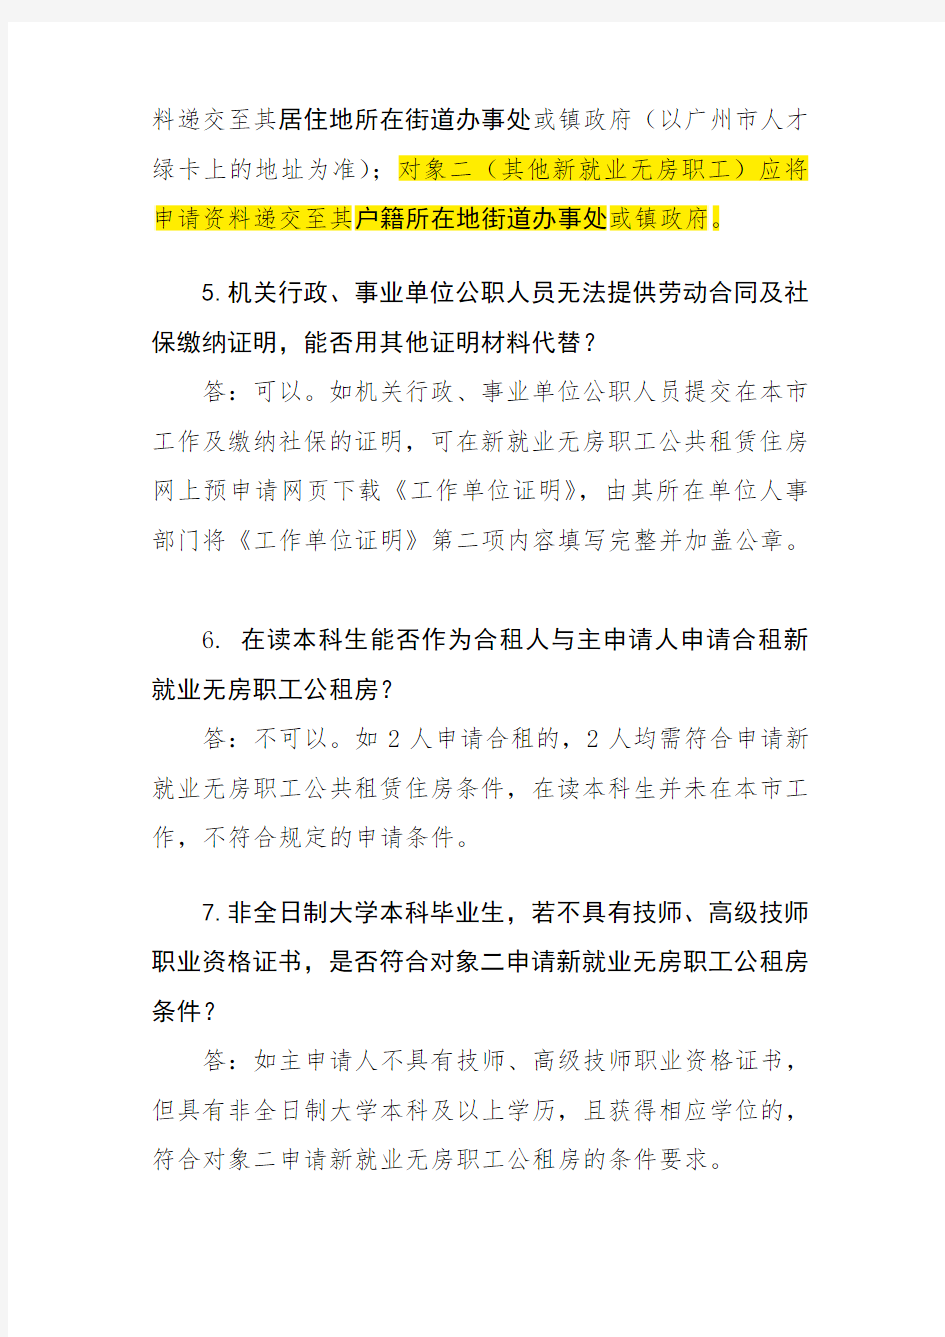 广州市2018年新就业无房职工申请公租房常见问题解答